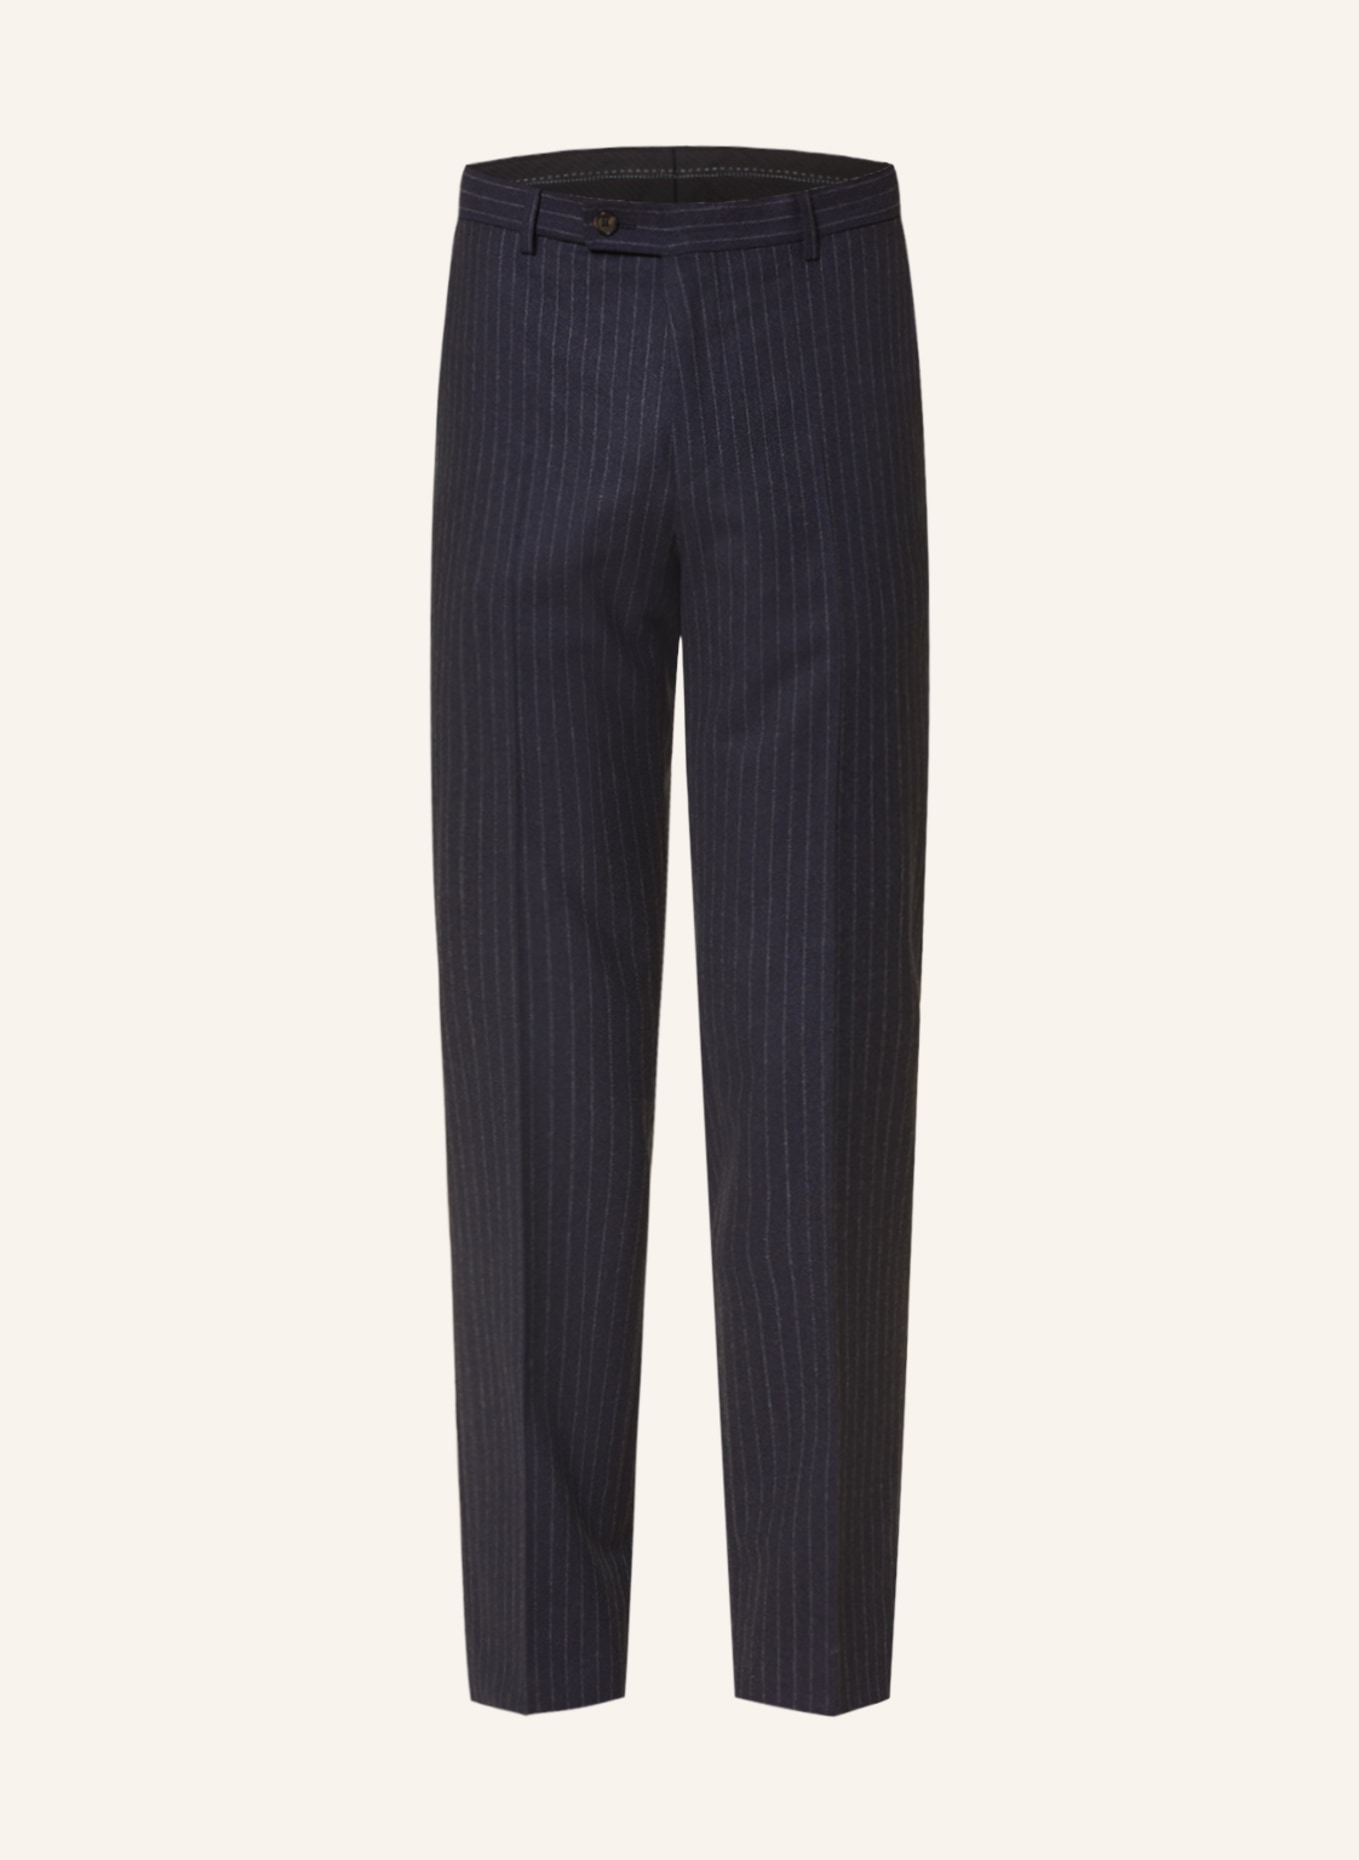 SAND COPENHAGEN Suit trousers CRAIG modern fit, Color: 590 NAVY (Image 1)